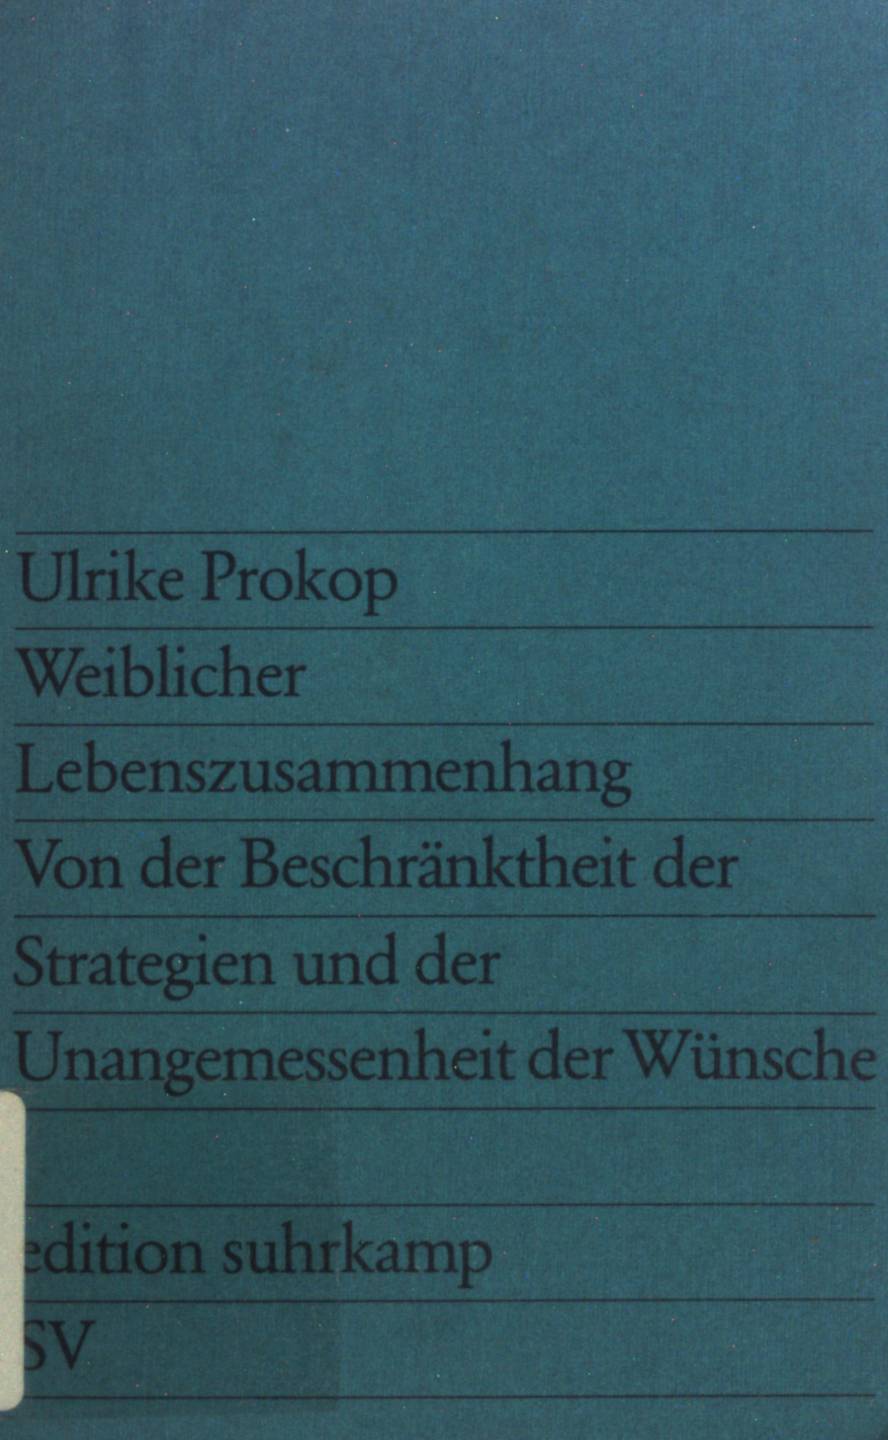 Weiblicher Lebenszusammenhang: Von der Beschränktheit der Strategien und der Unangemessenheit der Wünsche. (Nr. 808) - Prokop, Ulrike